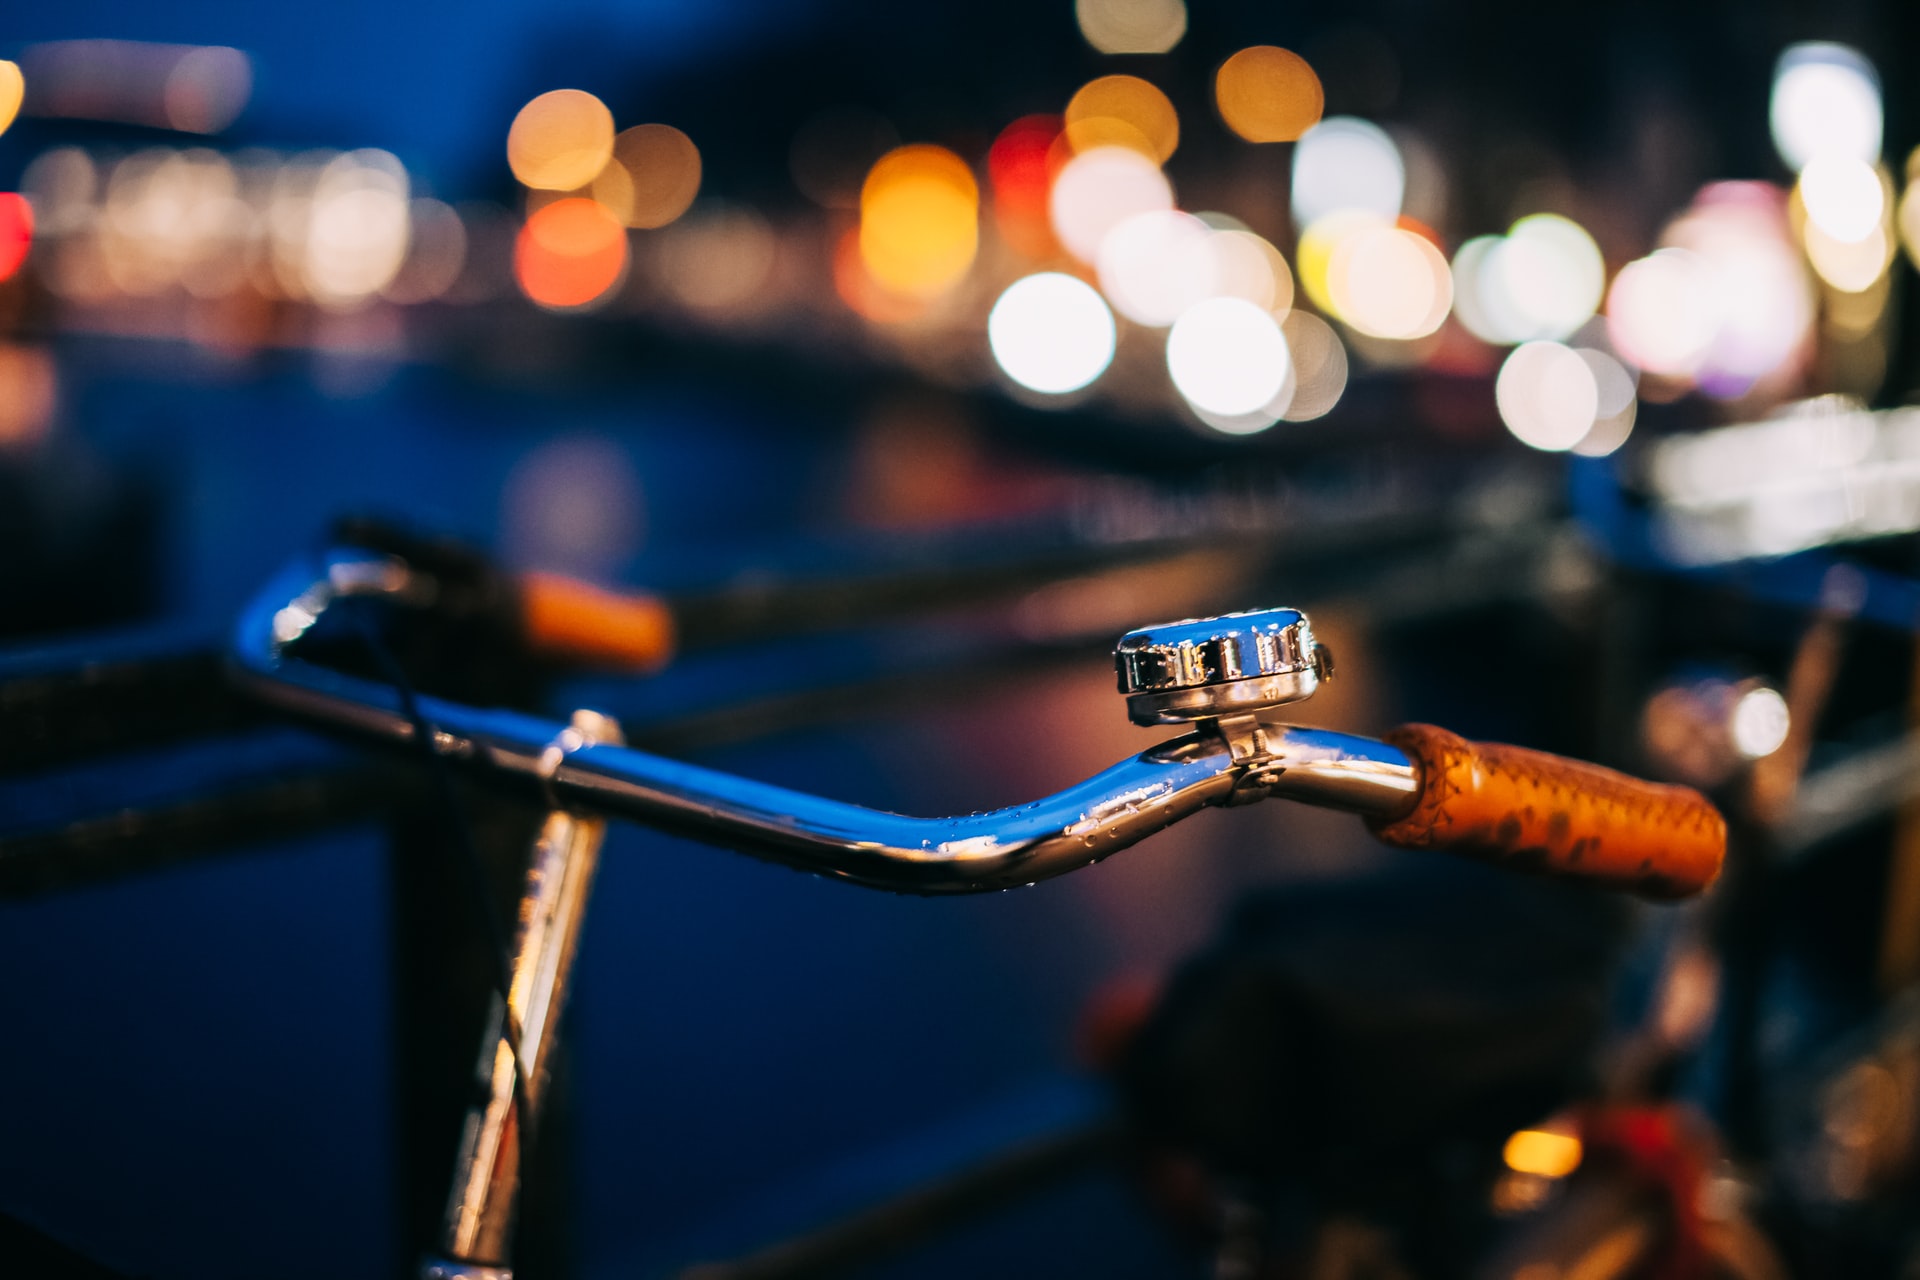 El timbre de bicicleta es obligatorio según el artículo 22 del Reglamento General de Vehículos